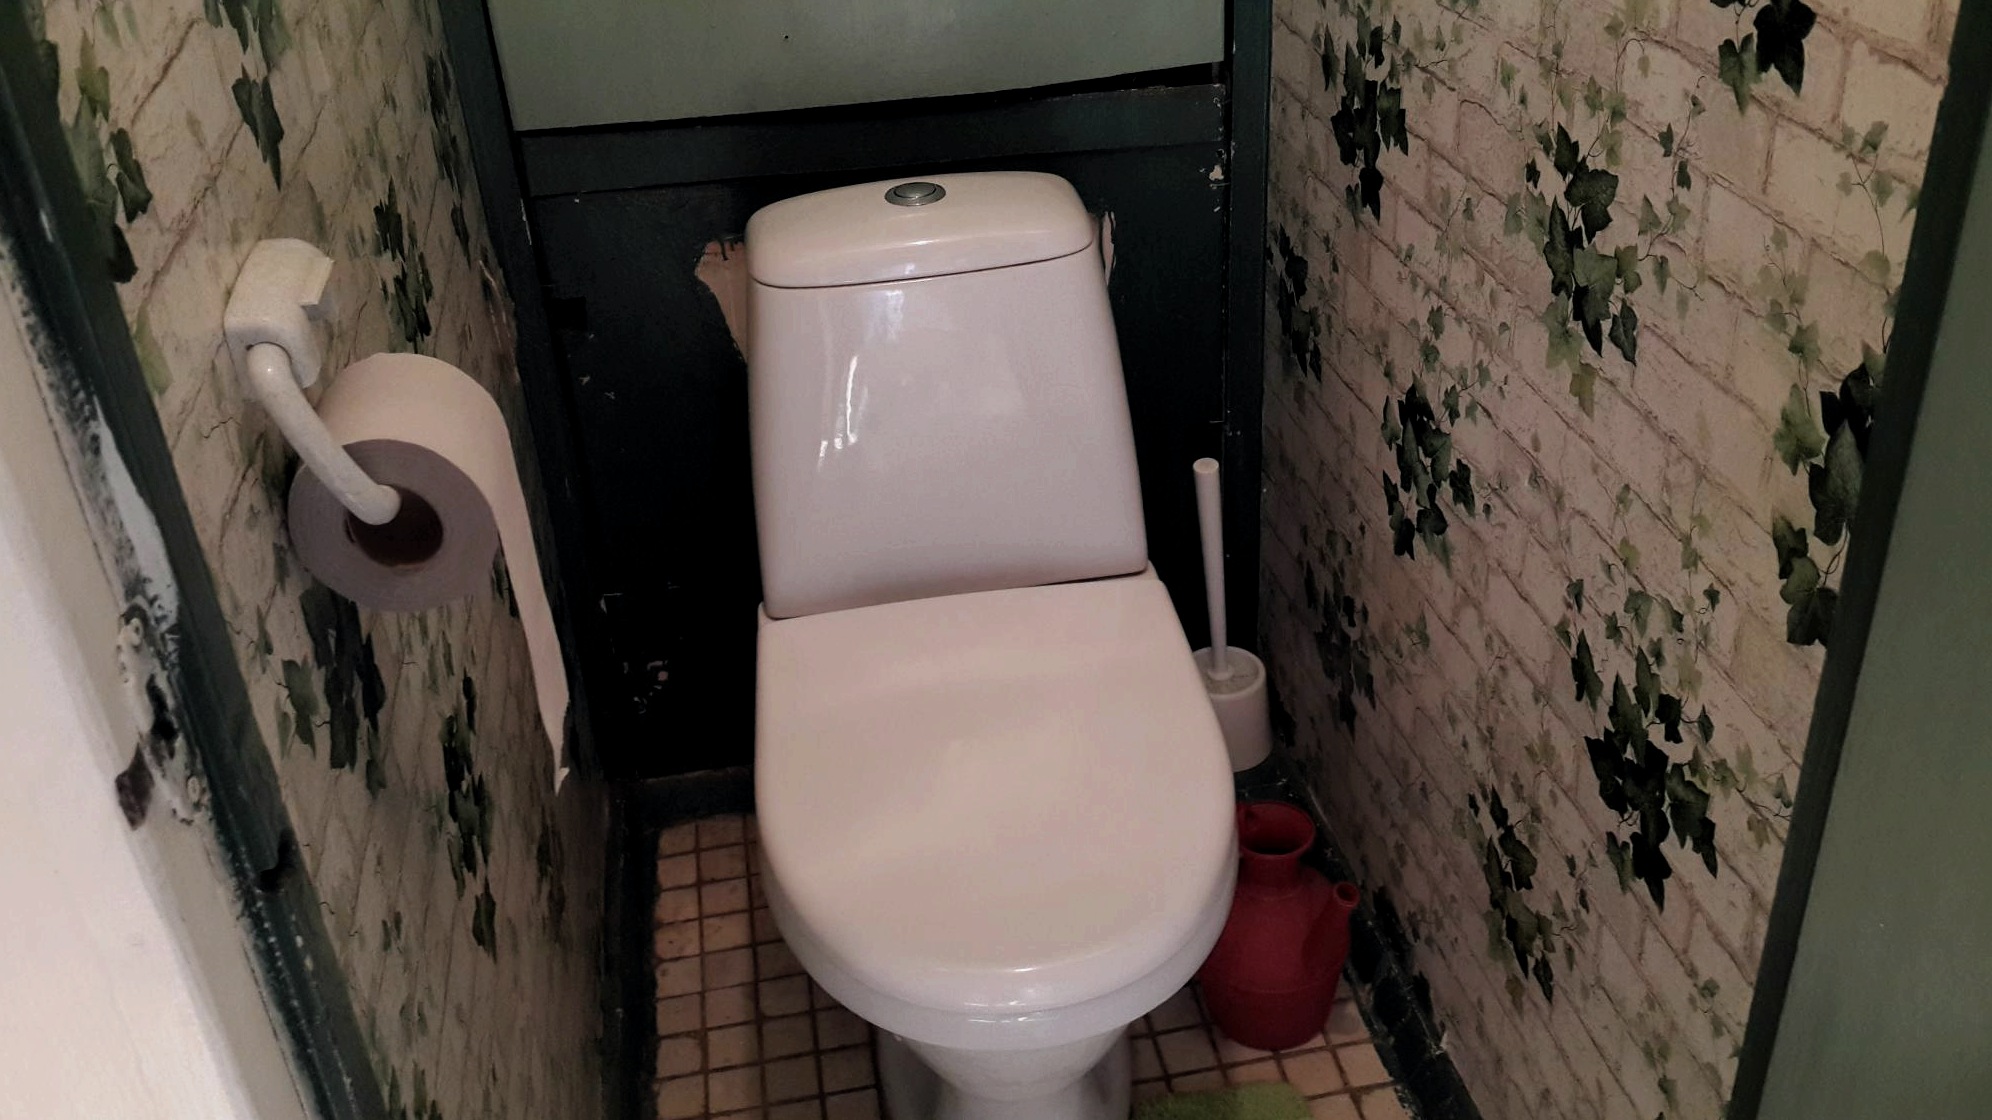 A tapéta kiválasztásának szabályai a WC -ben, mennyire praktikusak